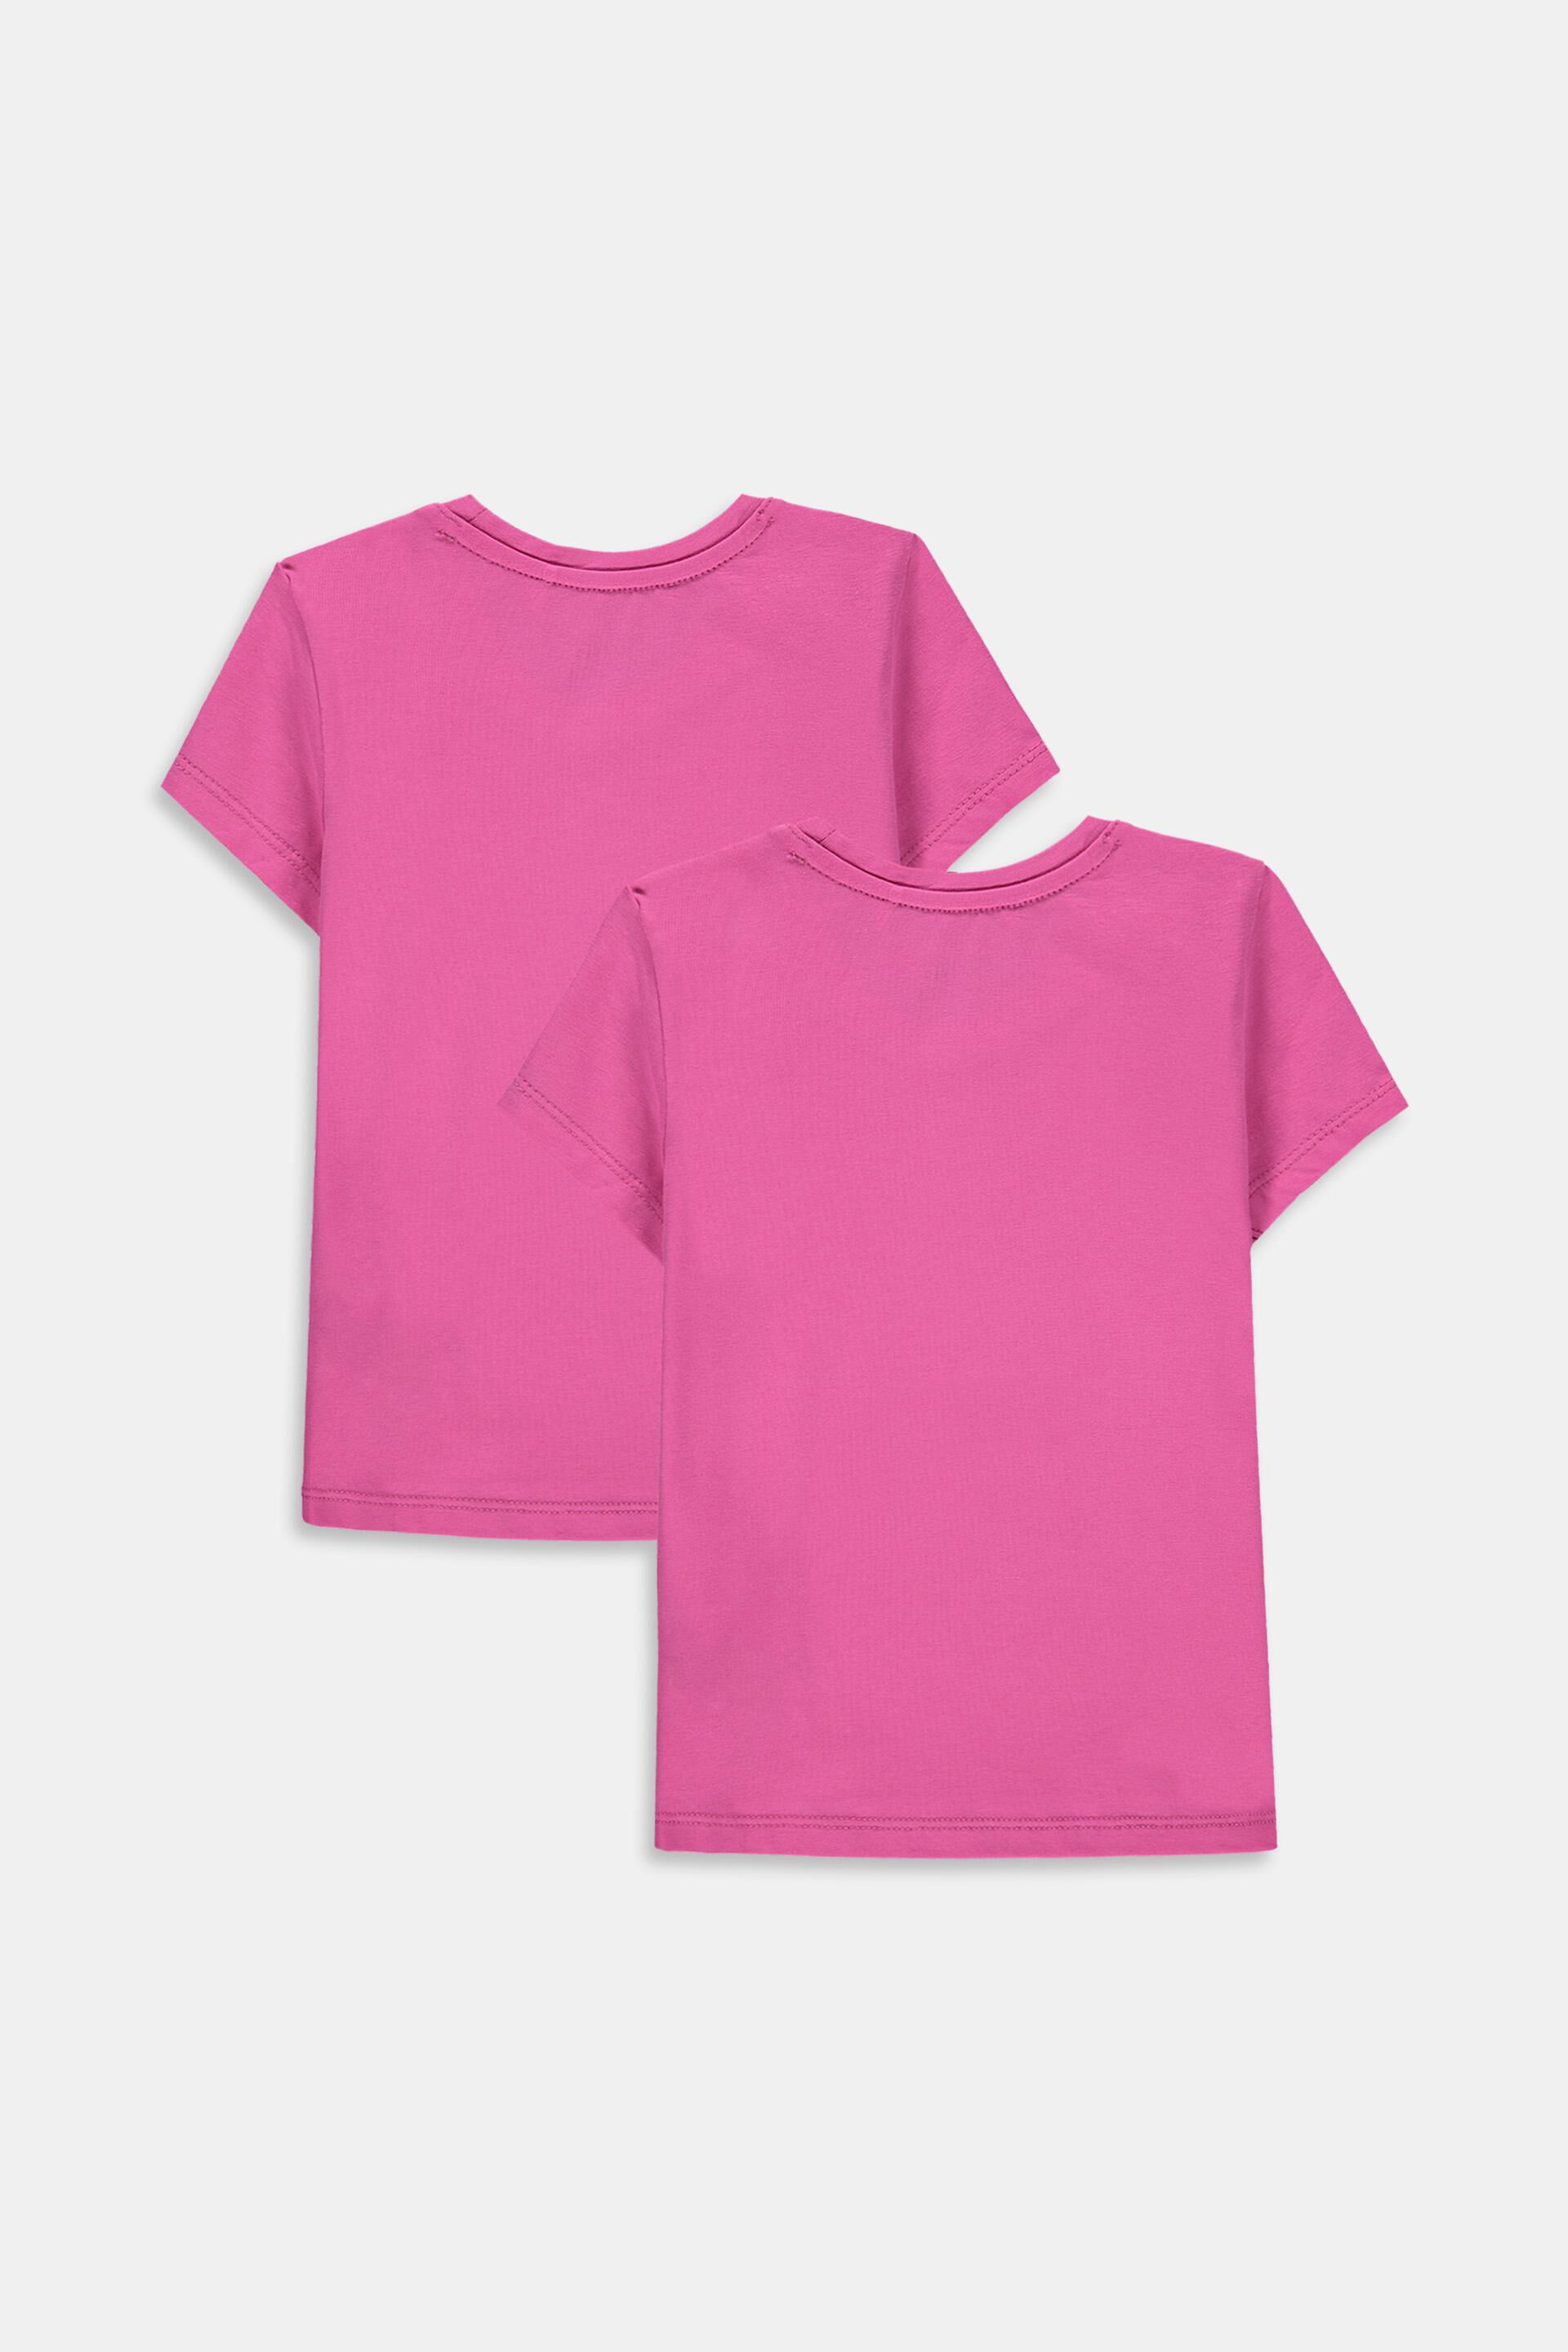 DE 176 Roxy Mädchen T-Shirt Gr Mädchen Bekleidung Shirts & Tops T-Shirts 